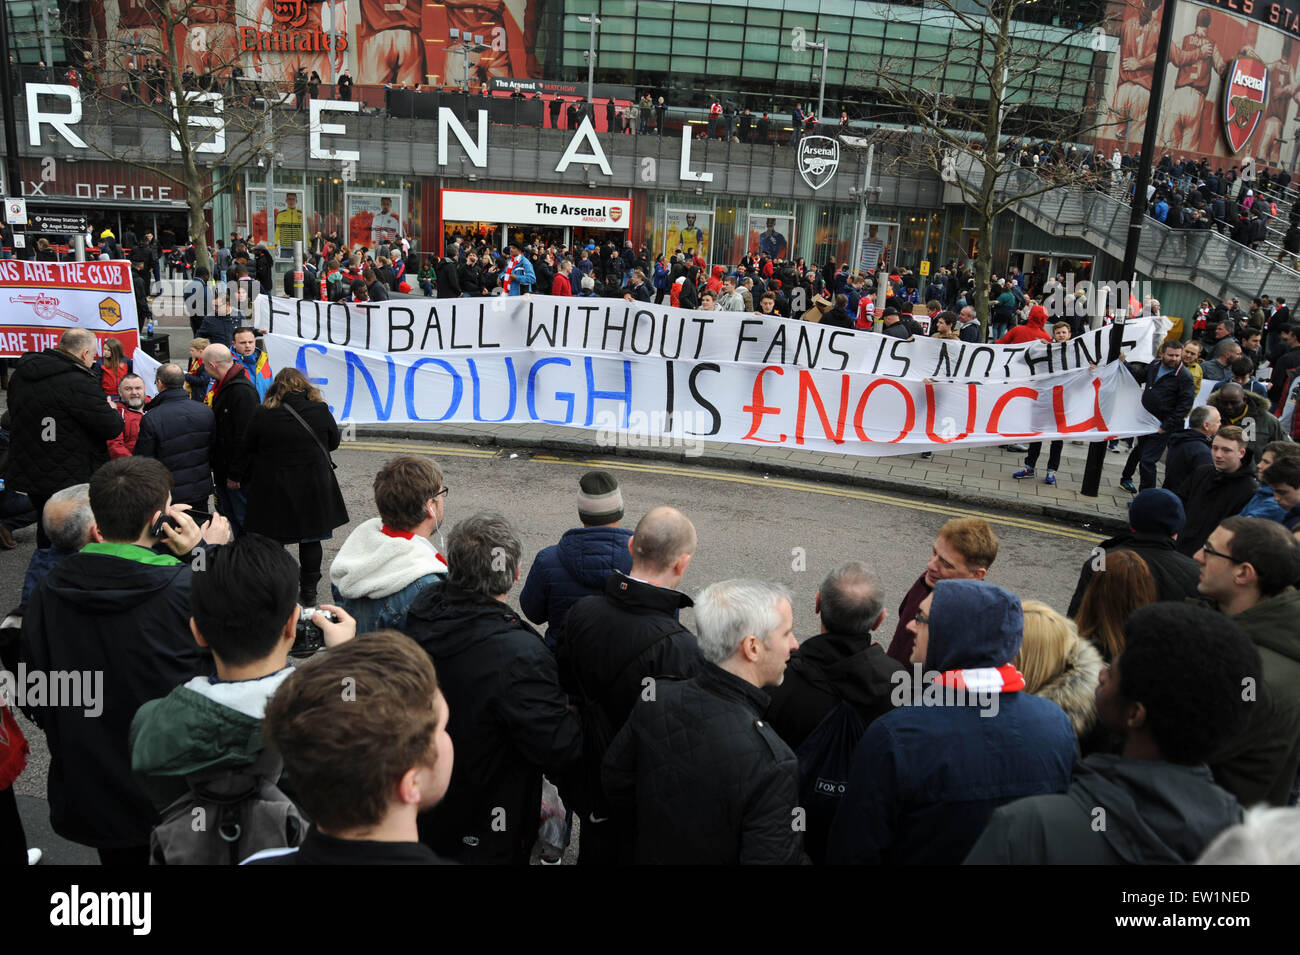 Fußball-Fans versammeln sich vor dem Emirates Stadium vor dem Spiel zwischen Arsenal und Liverpool zum protest gegen die steigende Ticketpreise in der Premier League.  Mitwirkende: Arsenal-Fans protestieren wo: London, Vereinigtes Königreich bei: 4. April 2015 Stockfoto